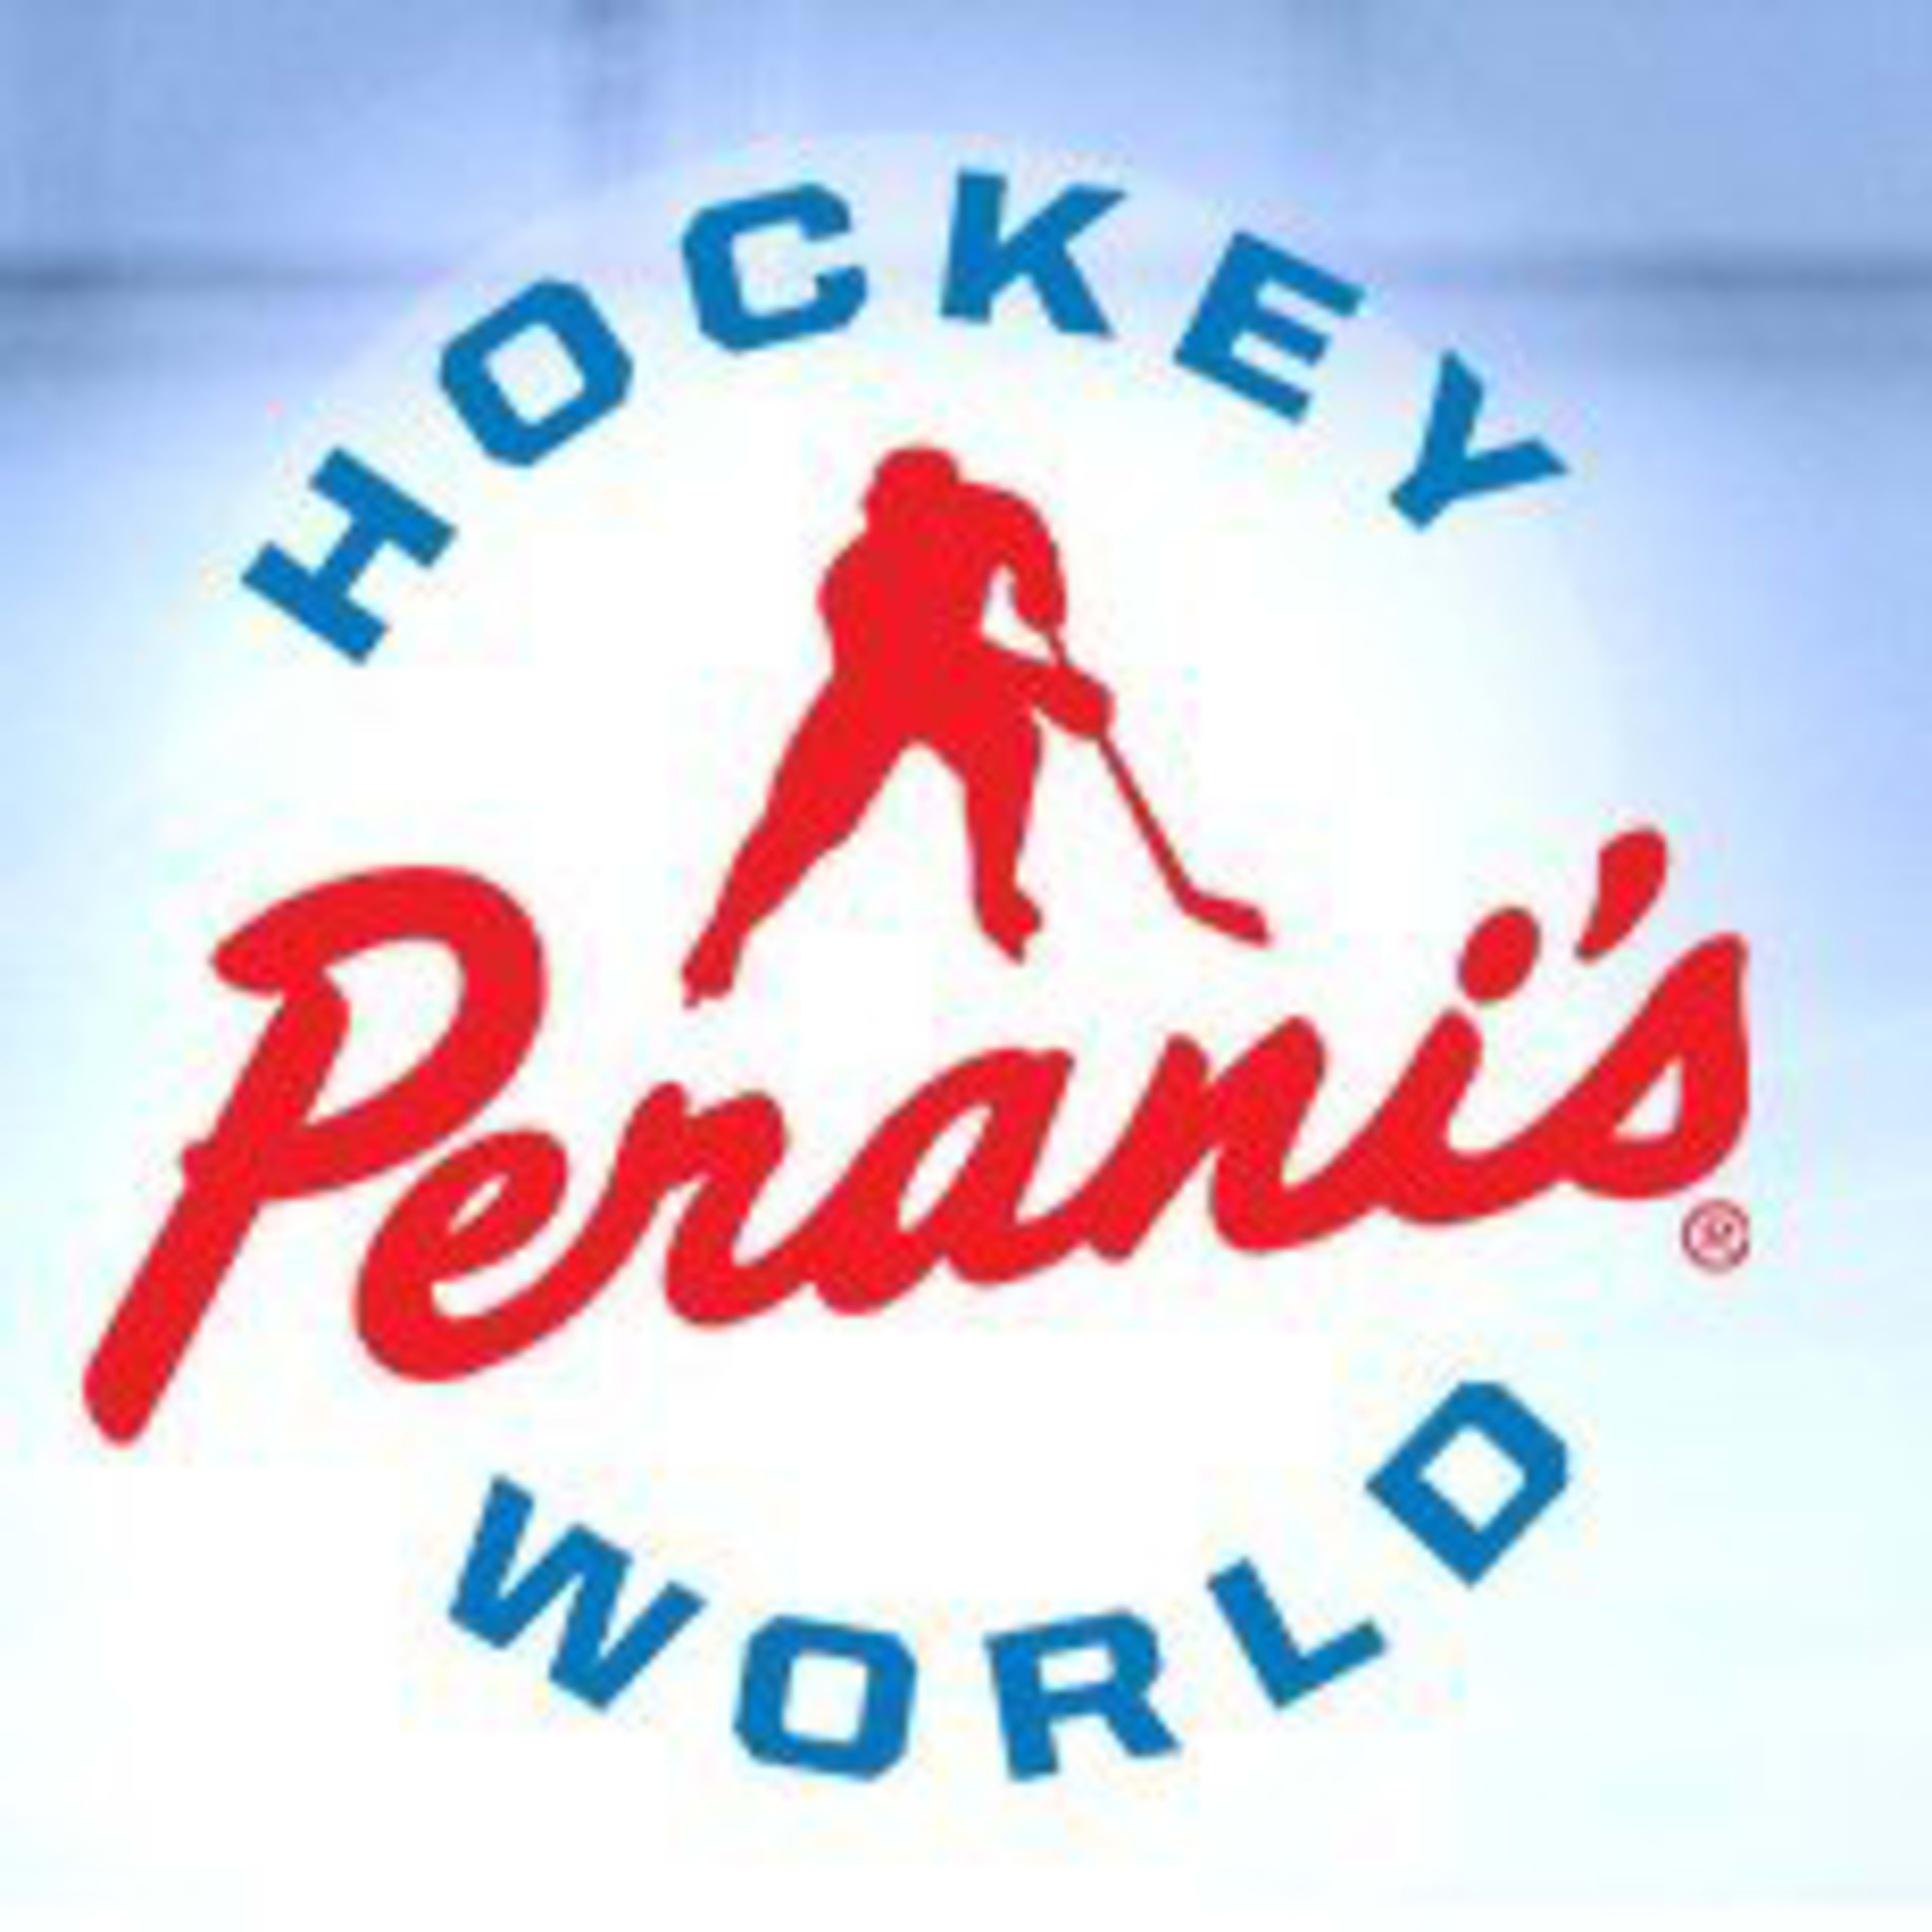 Peranis Hockey World